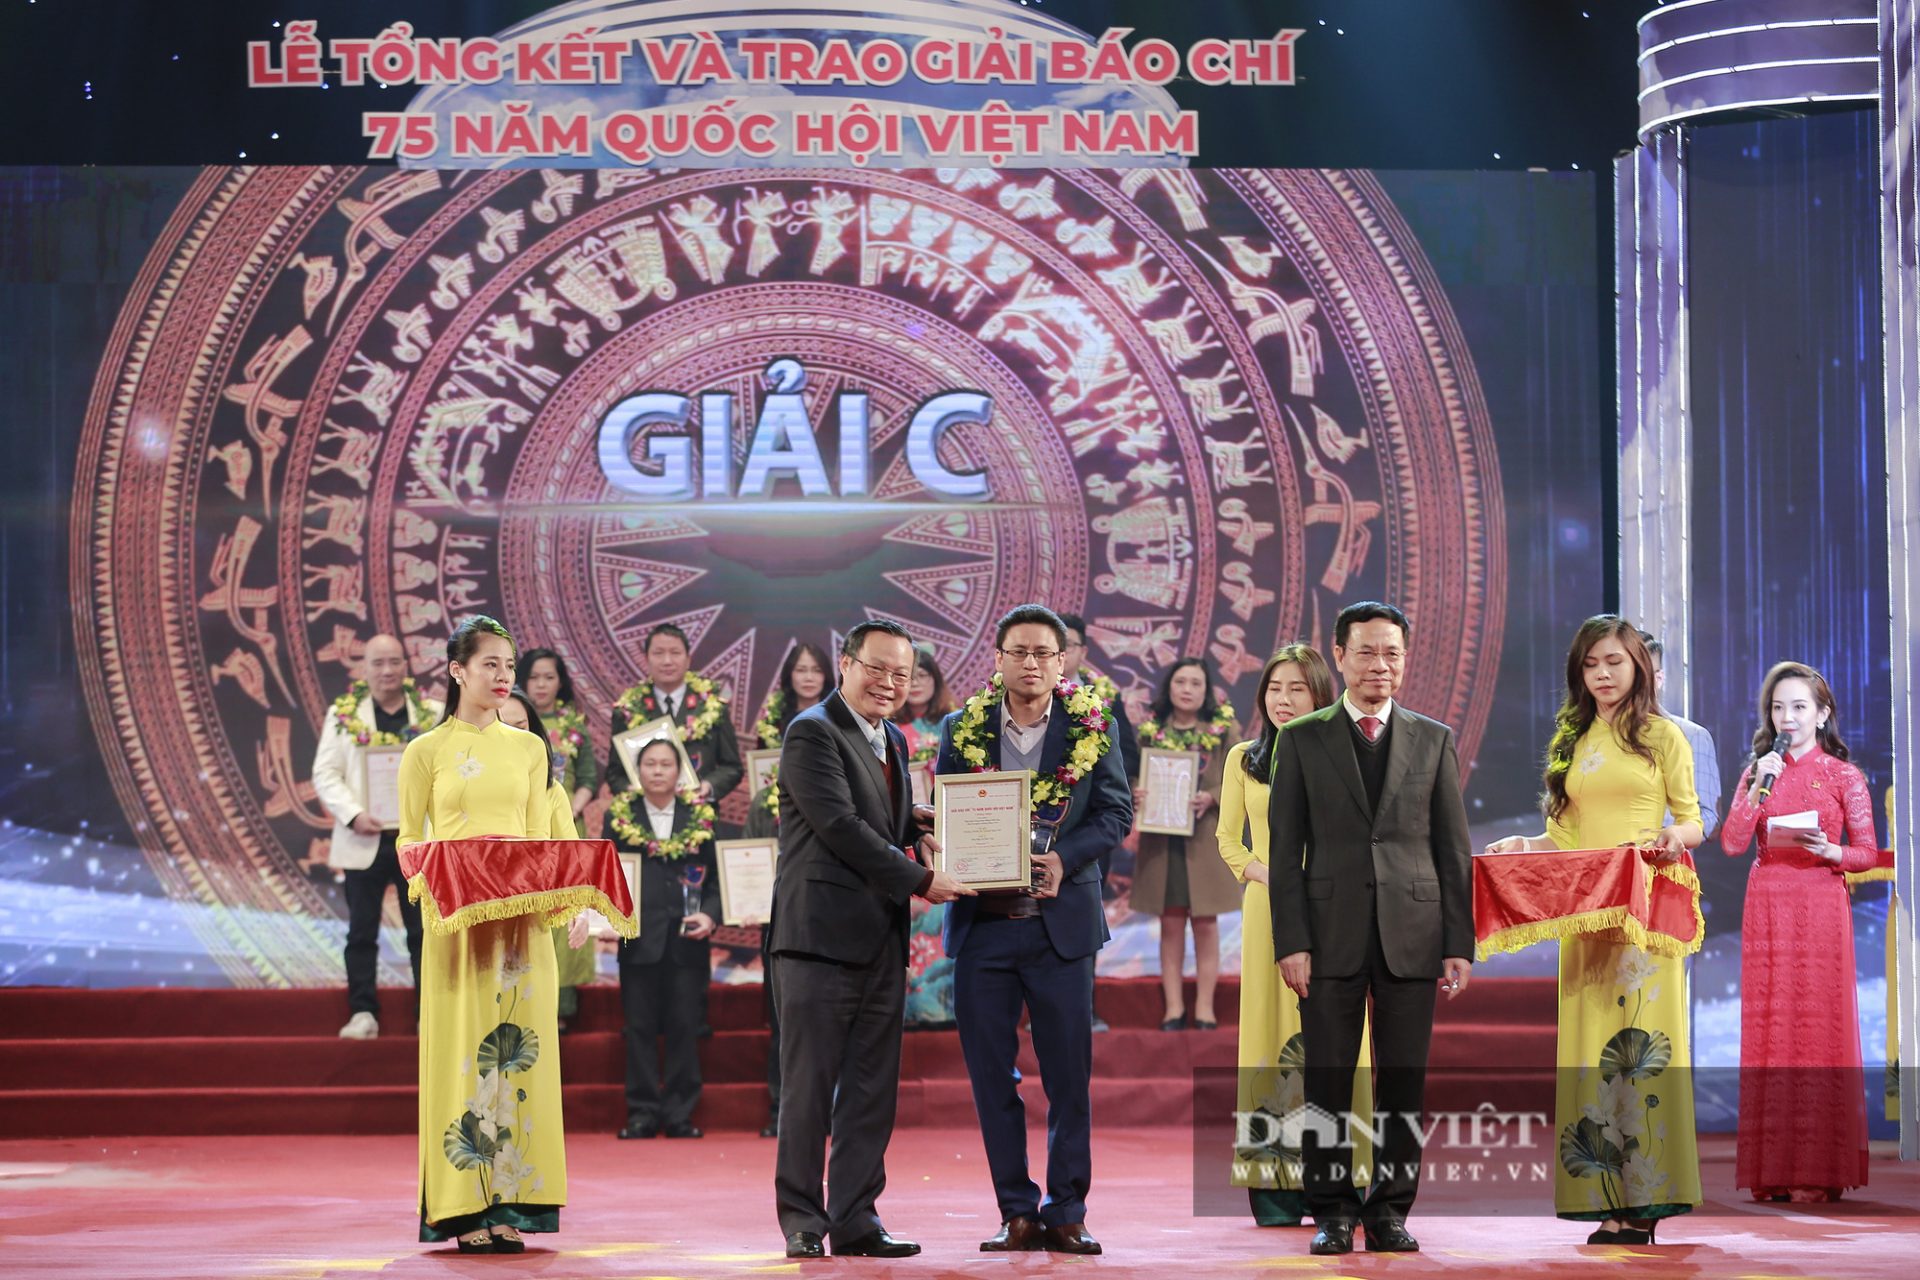 Toàn cảnh Lễ trao Giải báo chí 75 năm Quốc hội Việt Nam - Ảnh 5.